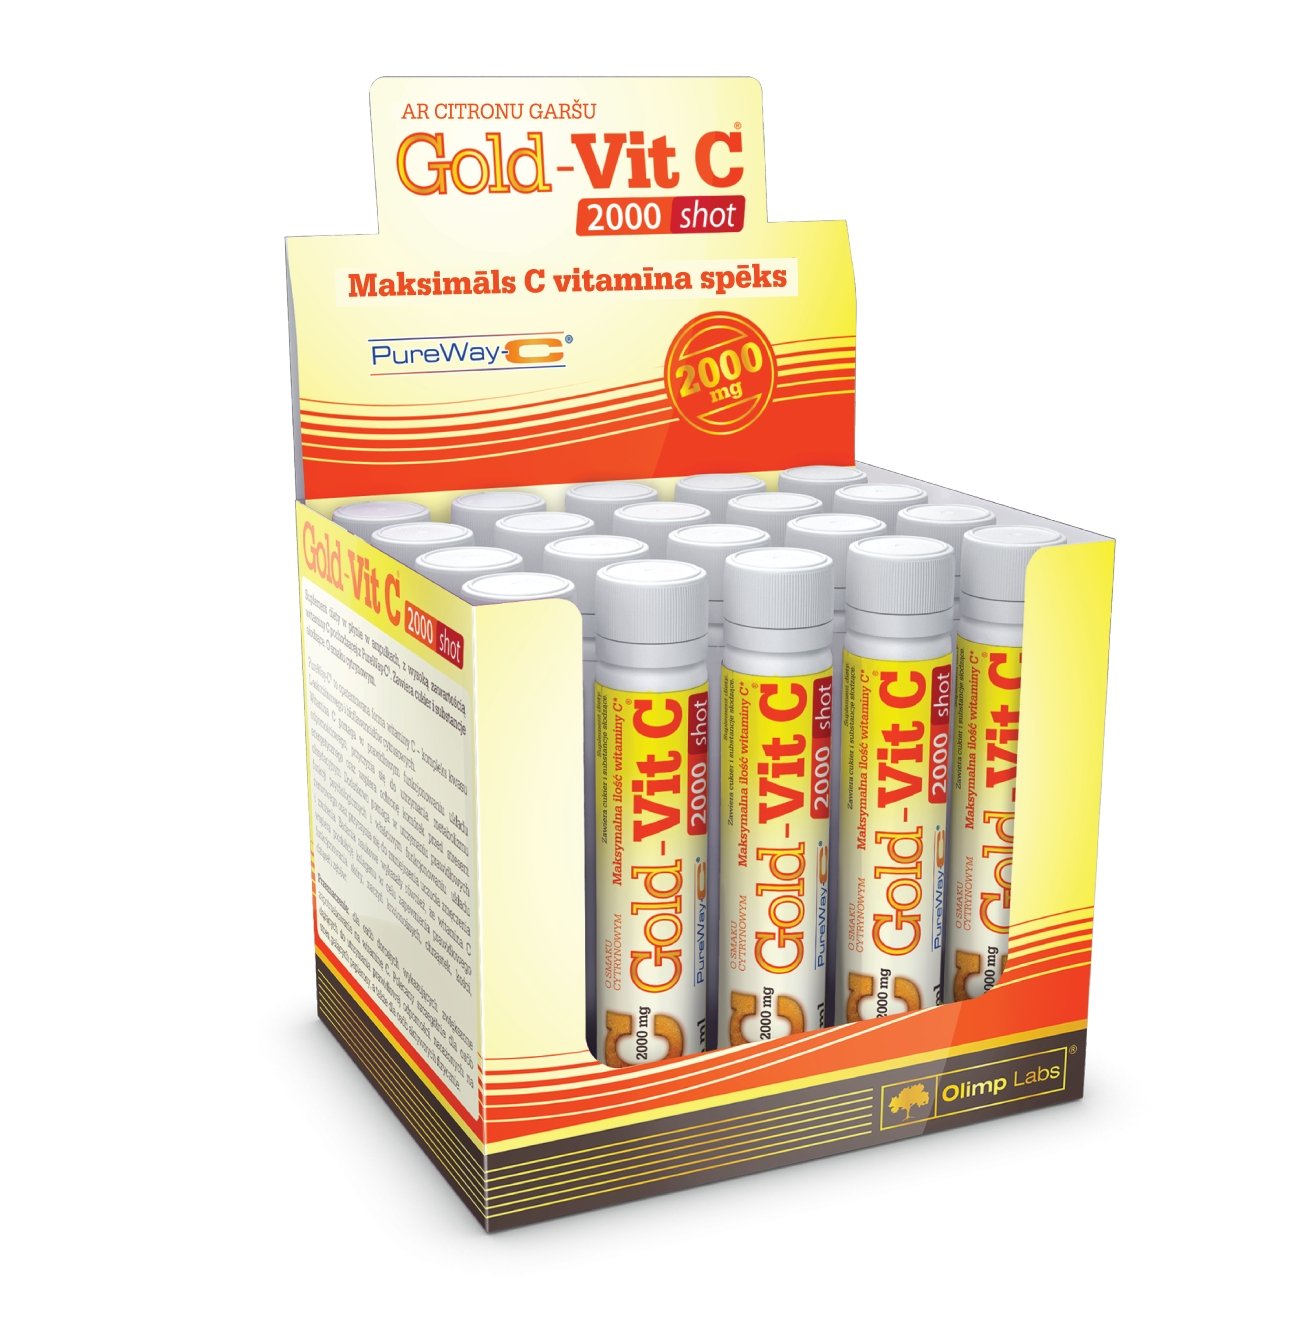 Витамины и минералы Olimp Gold-Vit C 2000 Shot, 10*25 мл,  мл, Olimp Labs. Витамины и минералы. Поддержание здоровья Укрепление иммунитета 